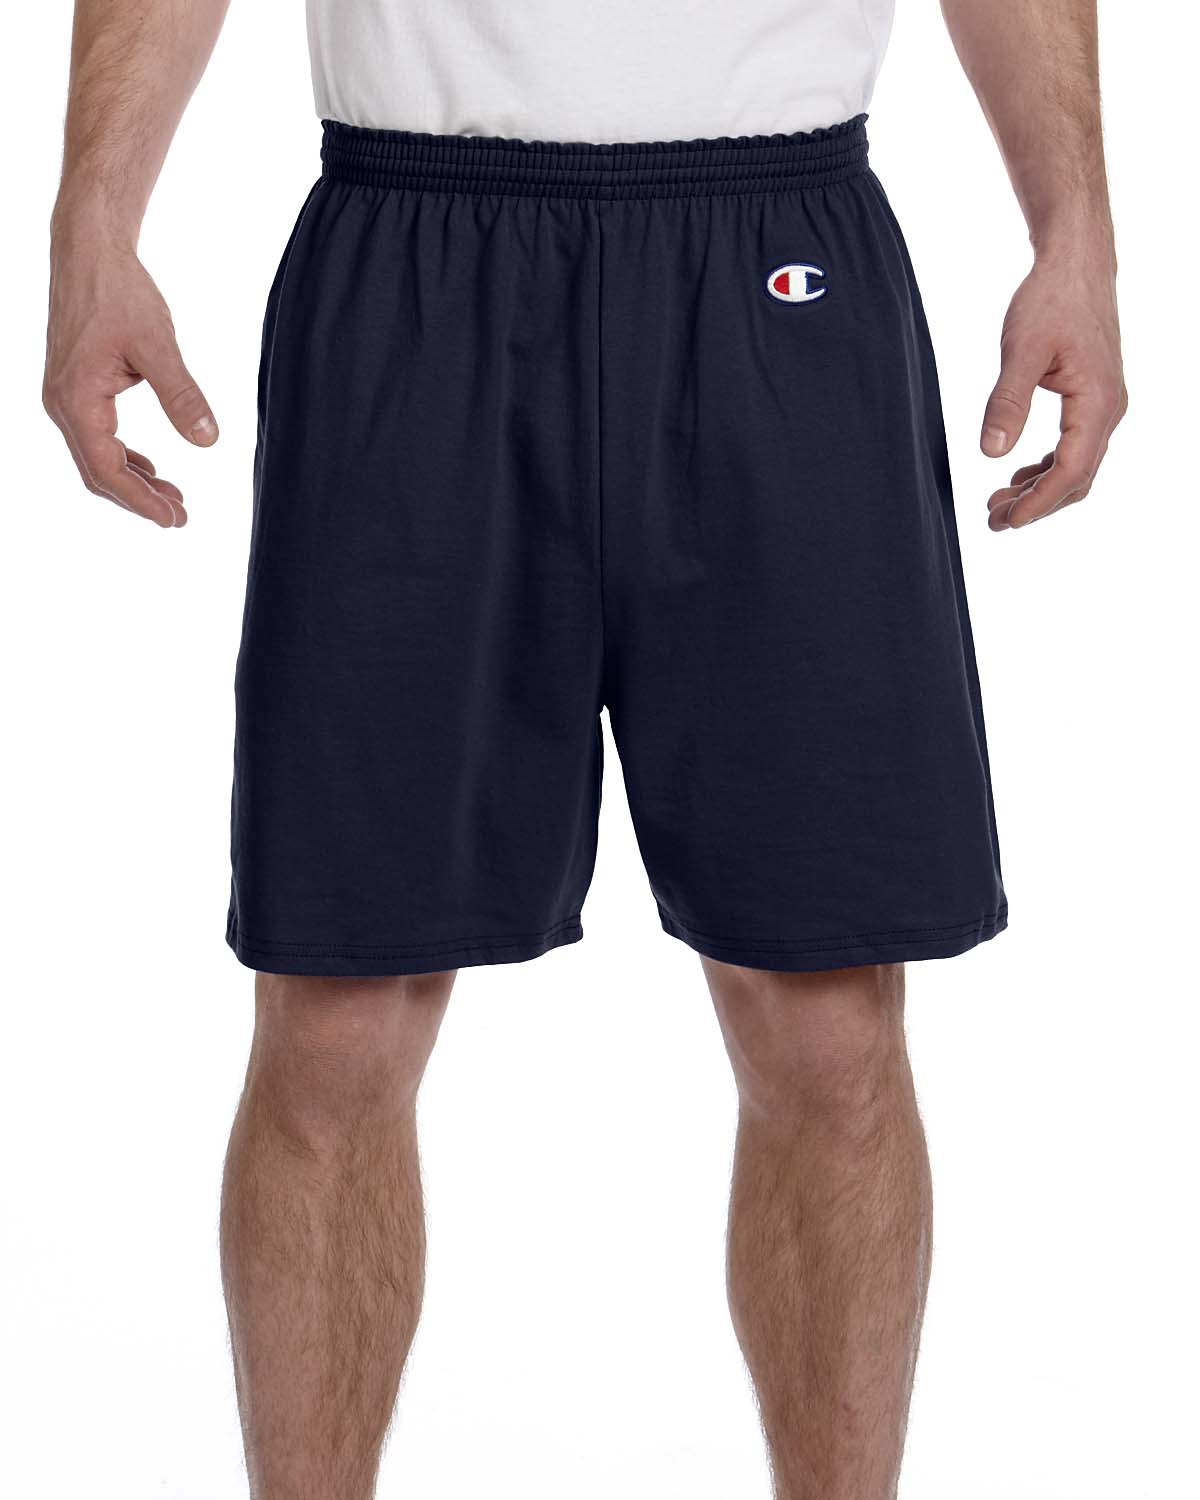 navy champion shorts